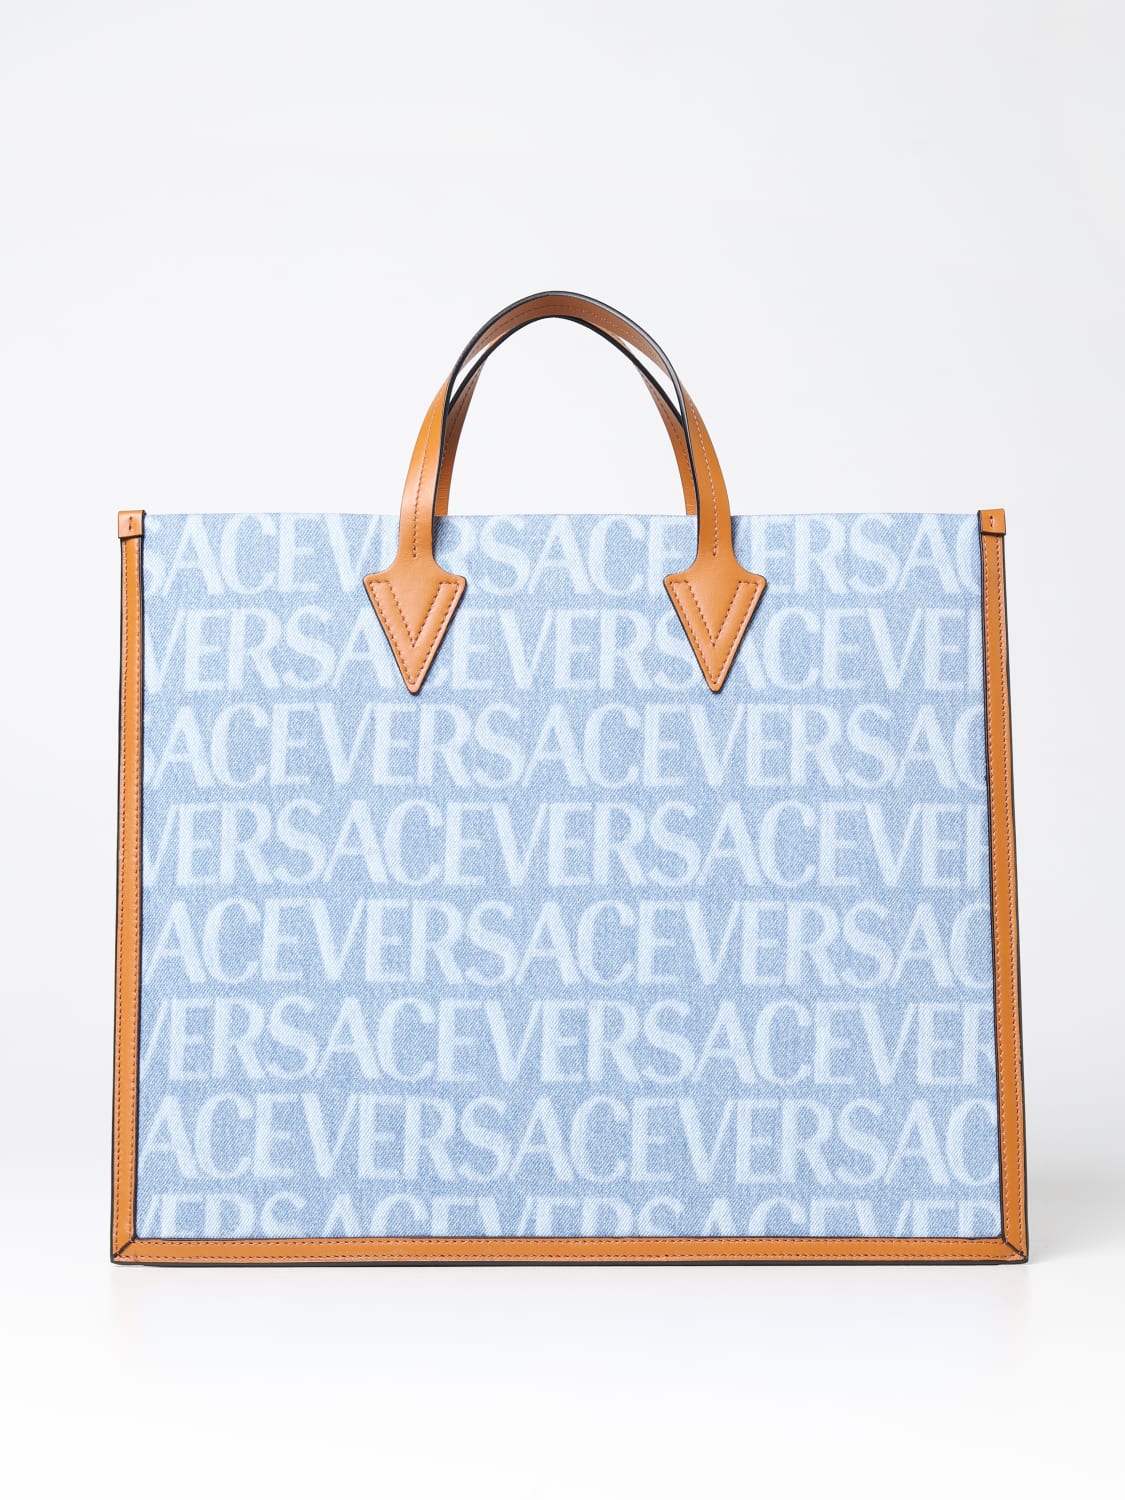 Versace, Bags, Blue Versace Bag